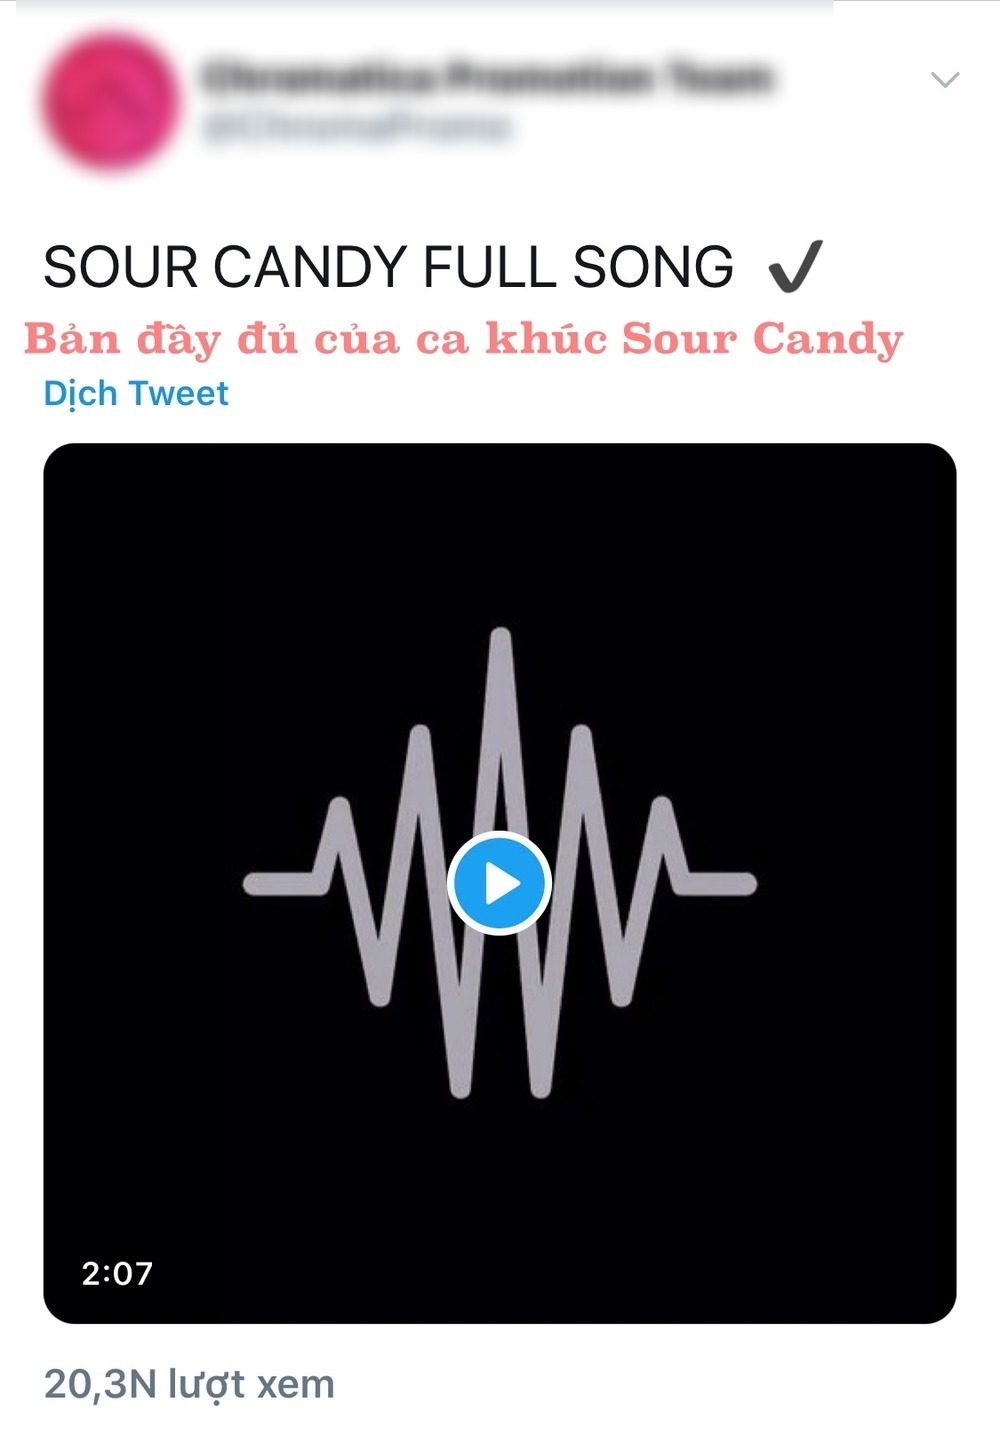  
Một bản đầy đủ của ca khúc Sour Candy được chia sẻ (Ảnh: Chụp màn hình).